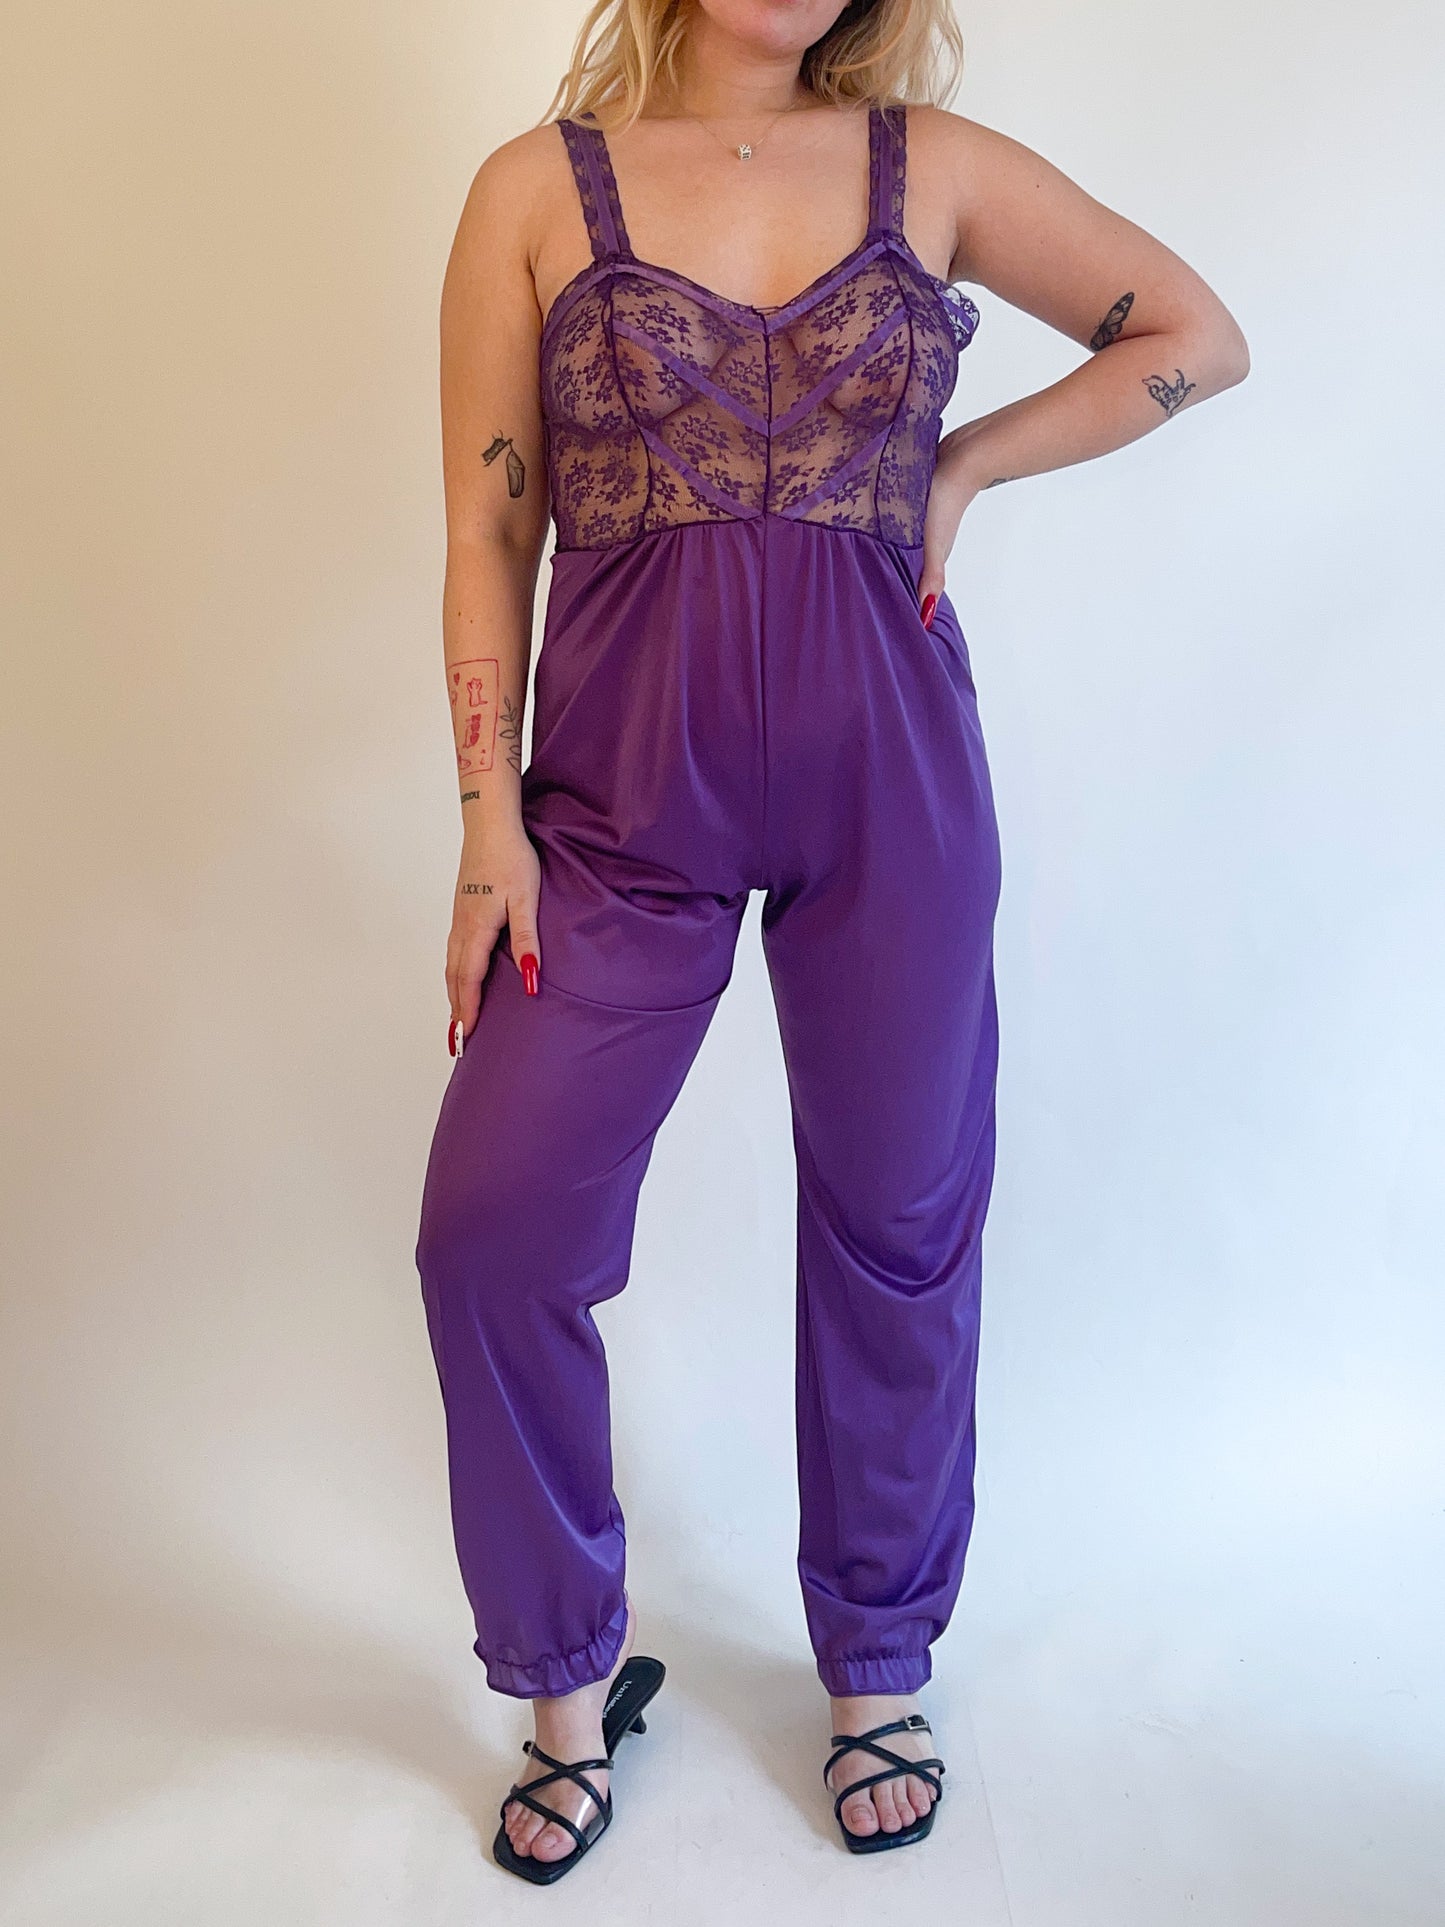 L 80s Purple Lace Lingerie Jumpsuit